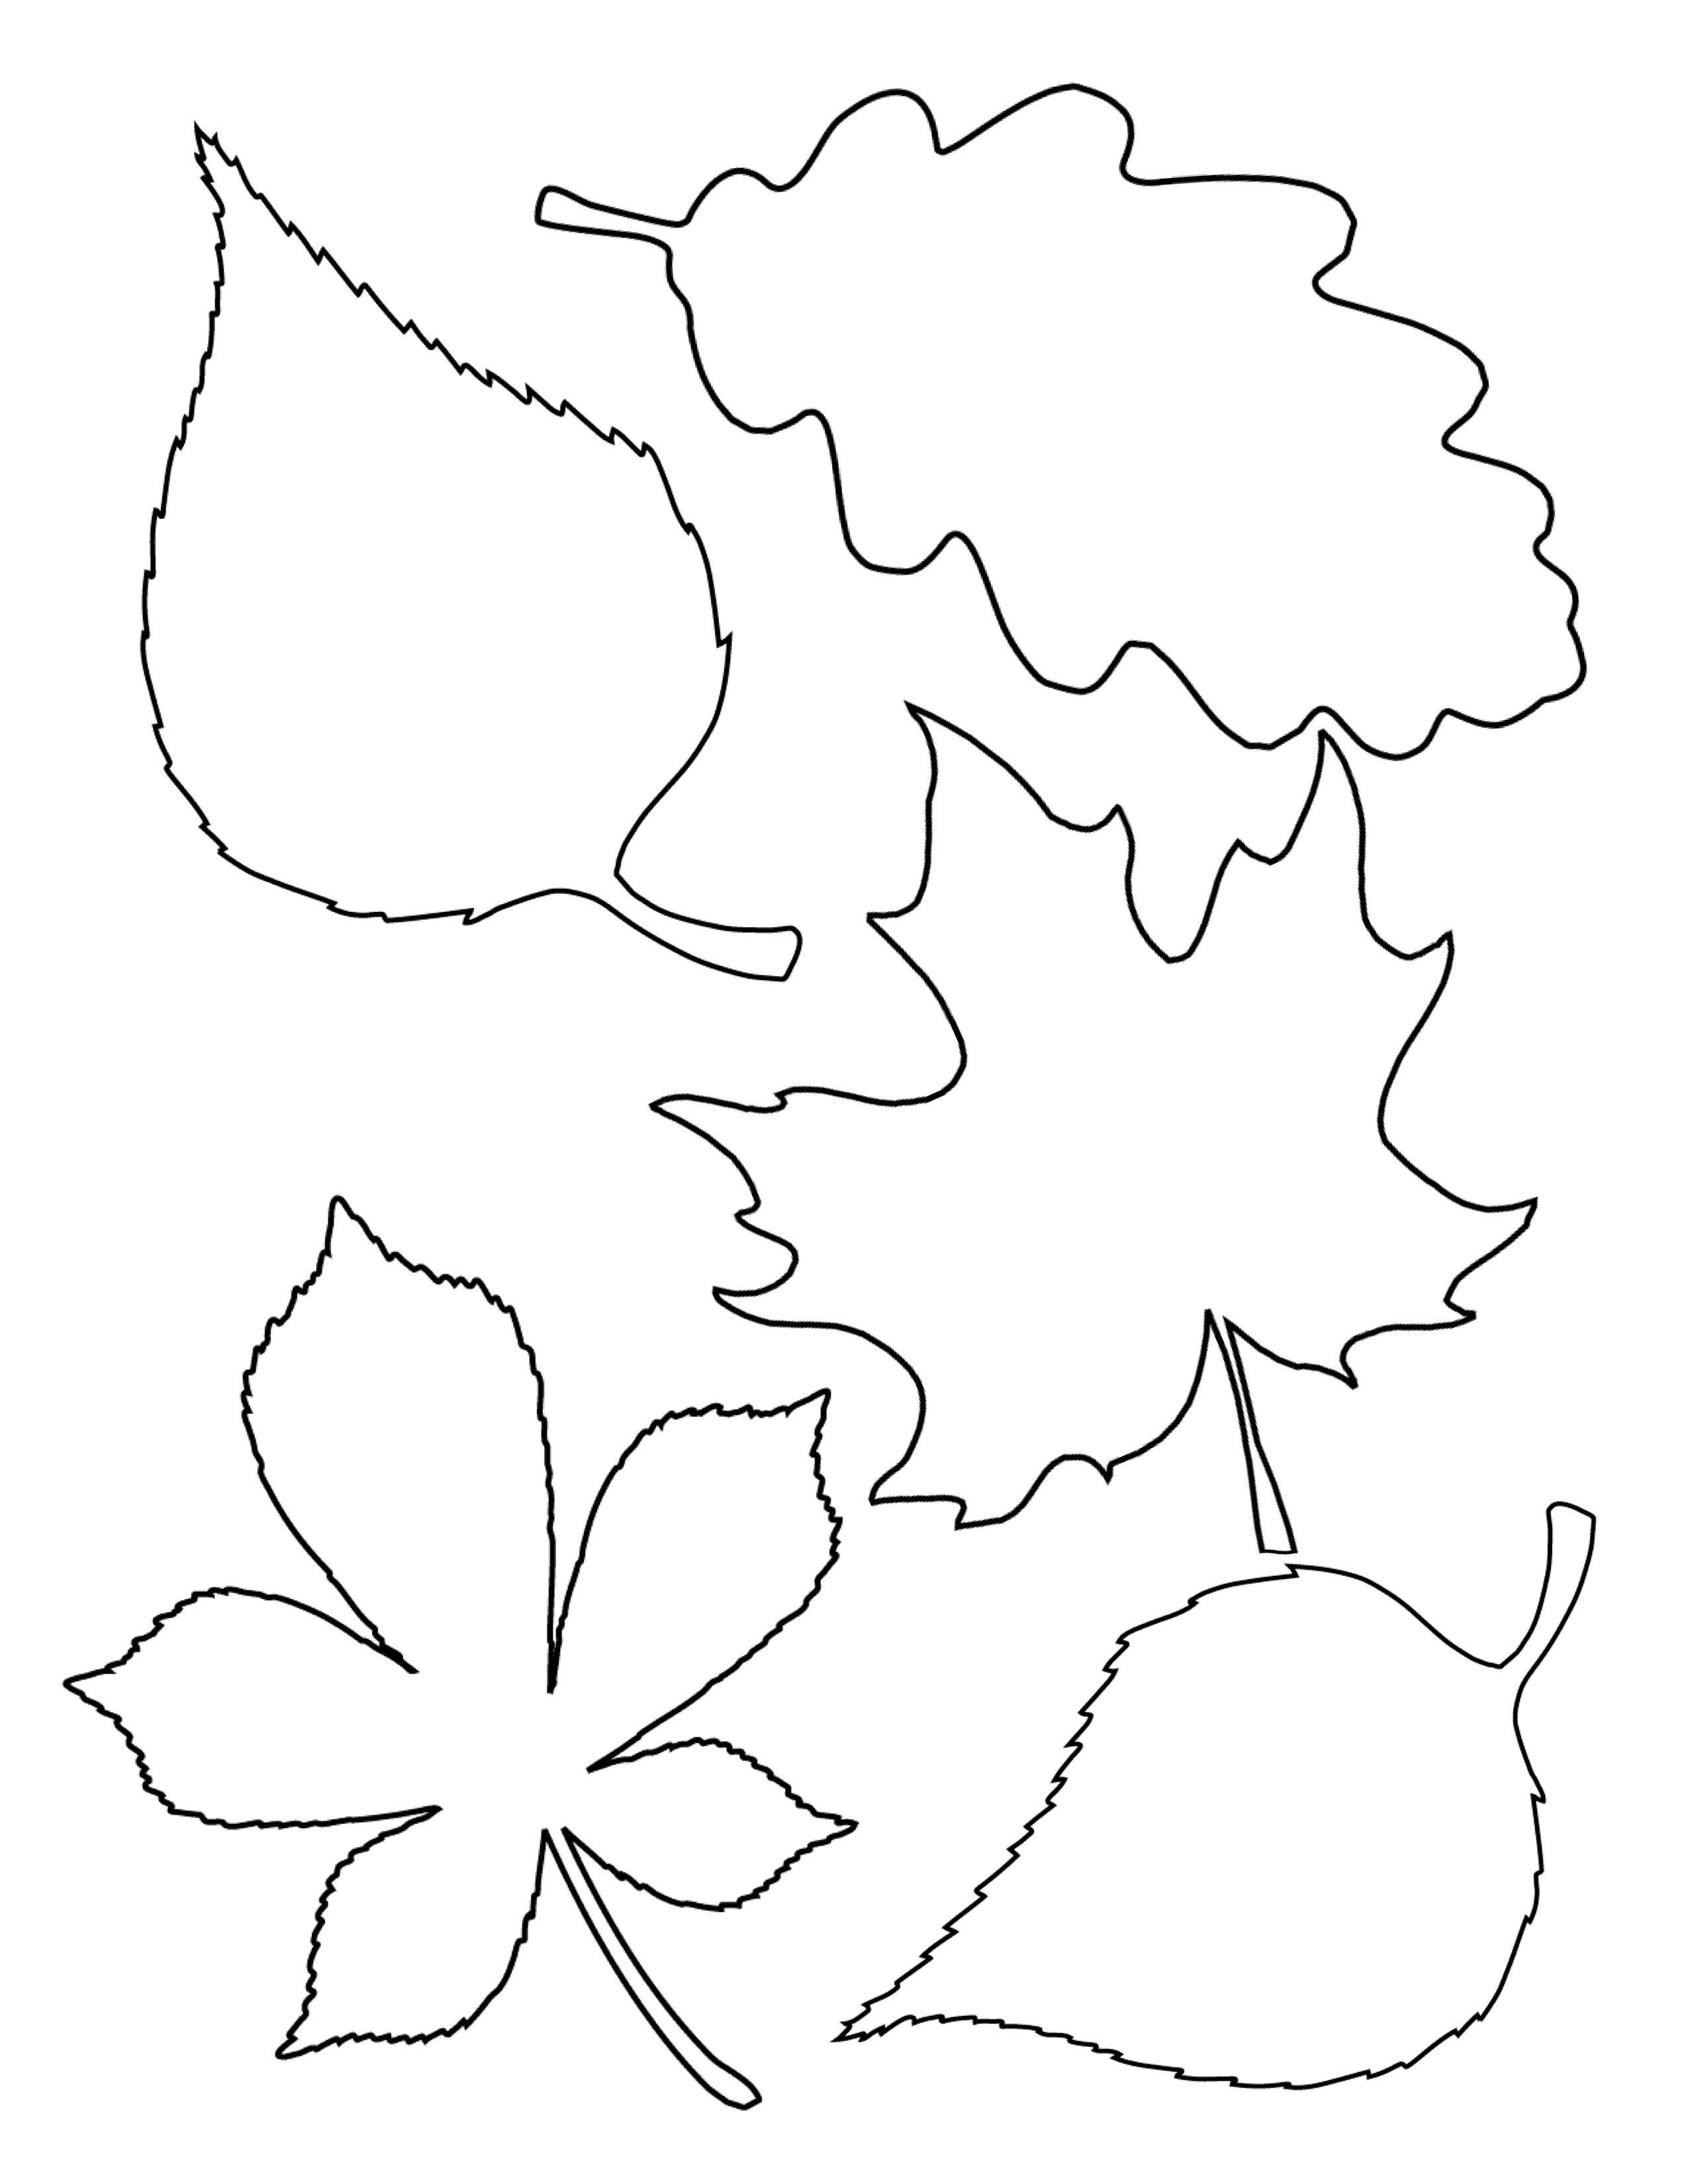 Leaf Template 9